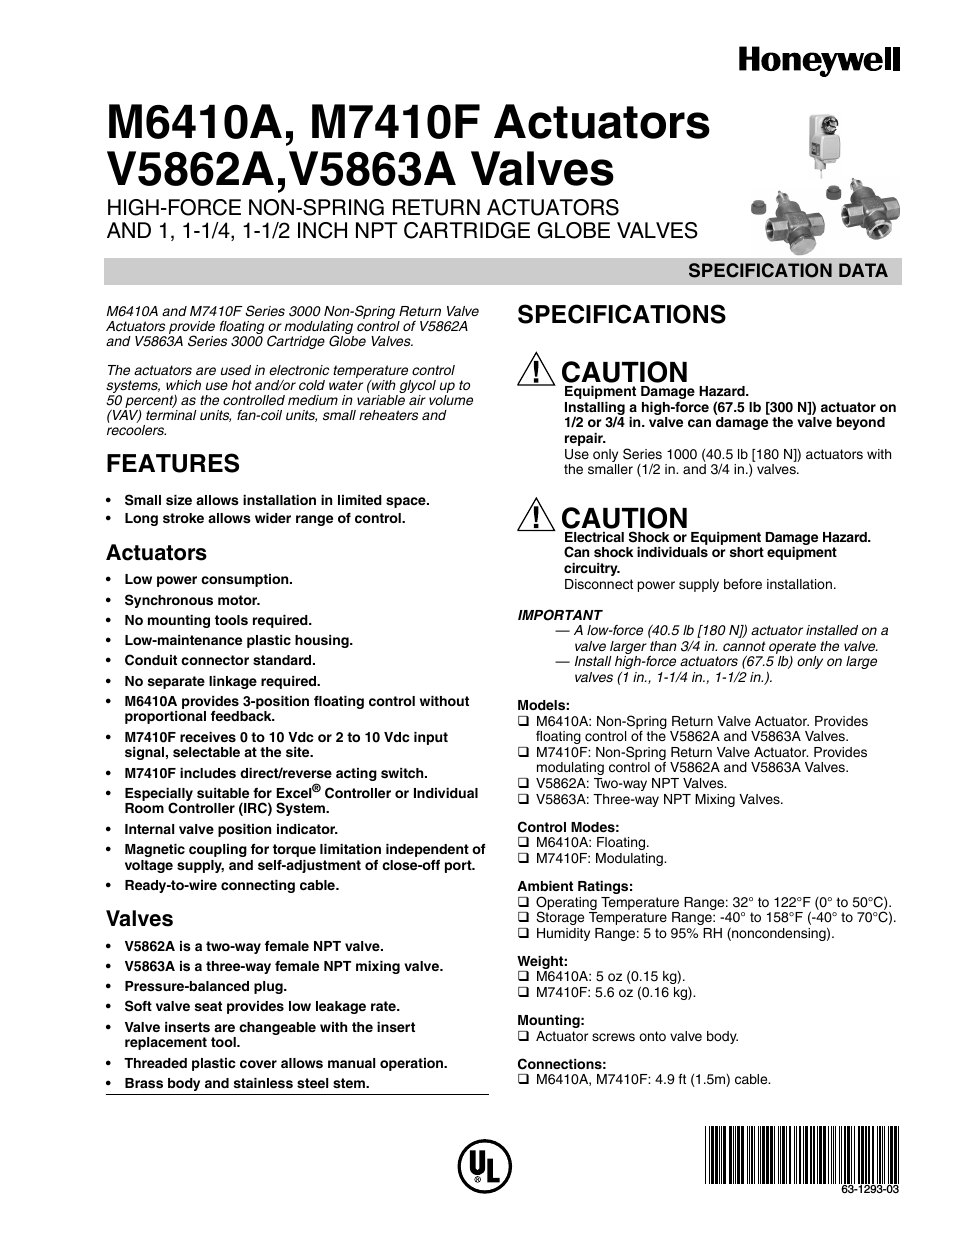 V5863A